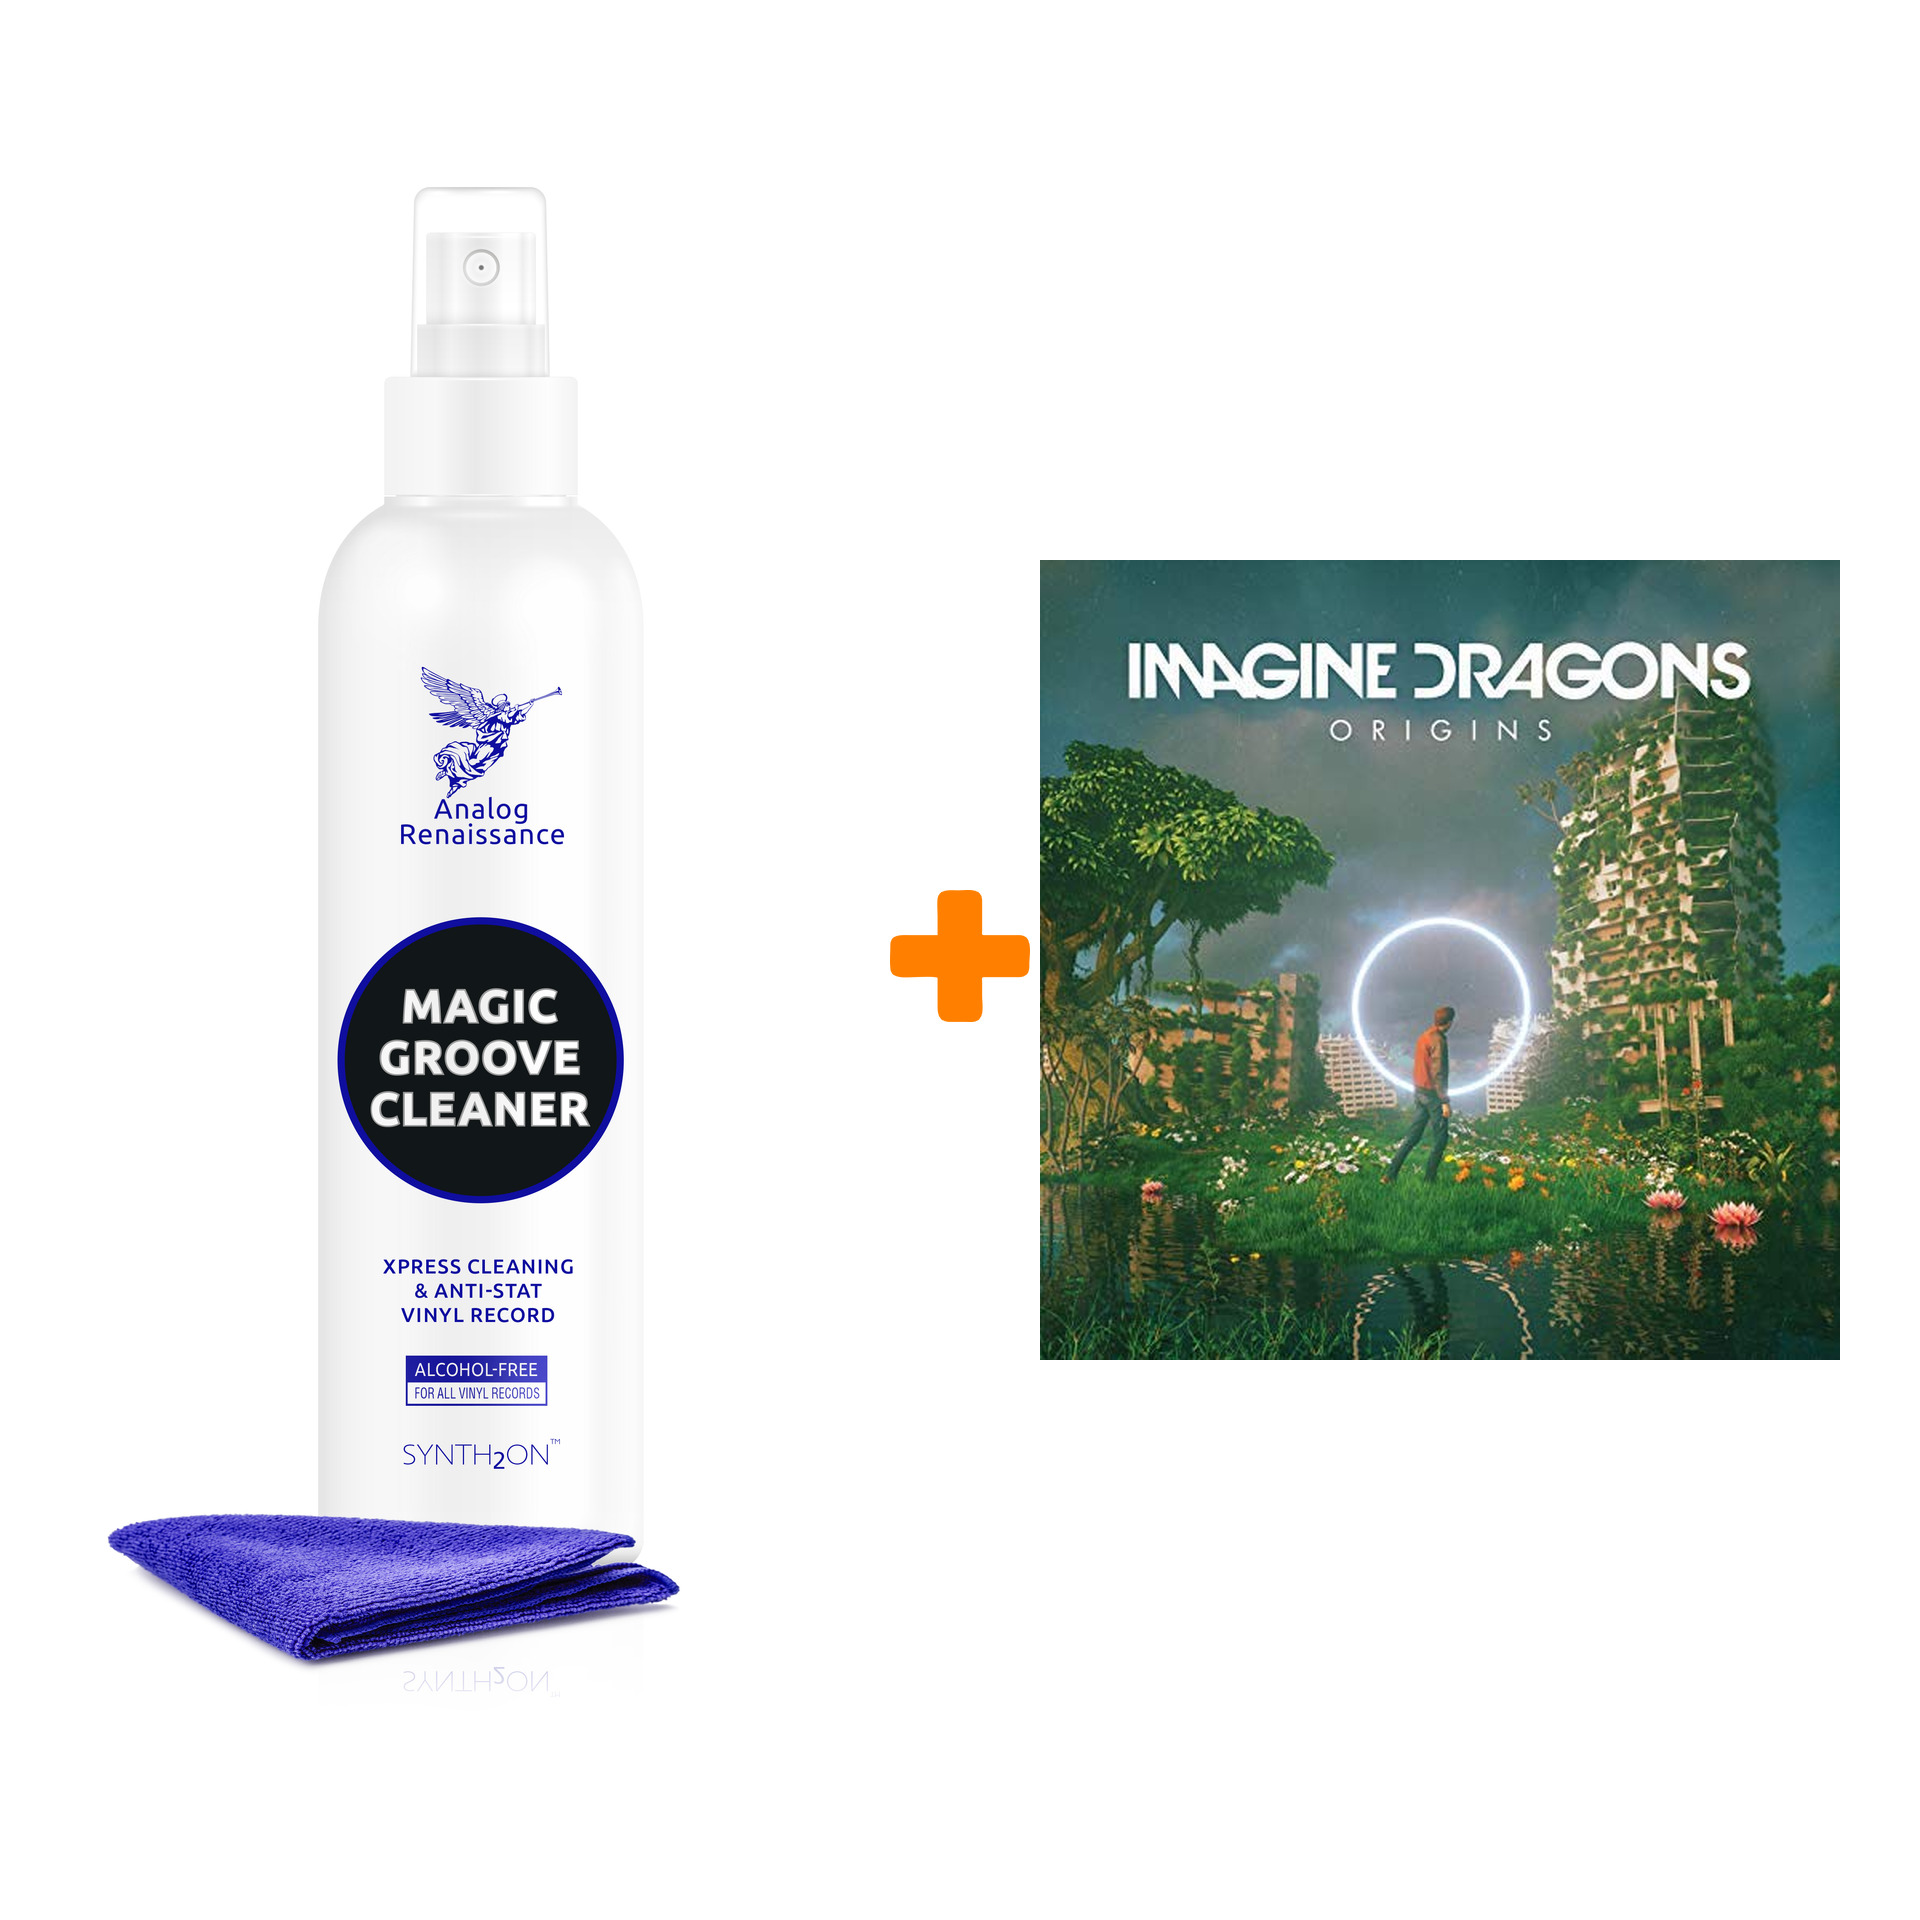 IMAGINE DRAGONS Origins 2LP + Спрей для очистки LP с микрофиброй 250мл Набор